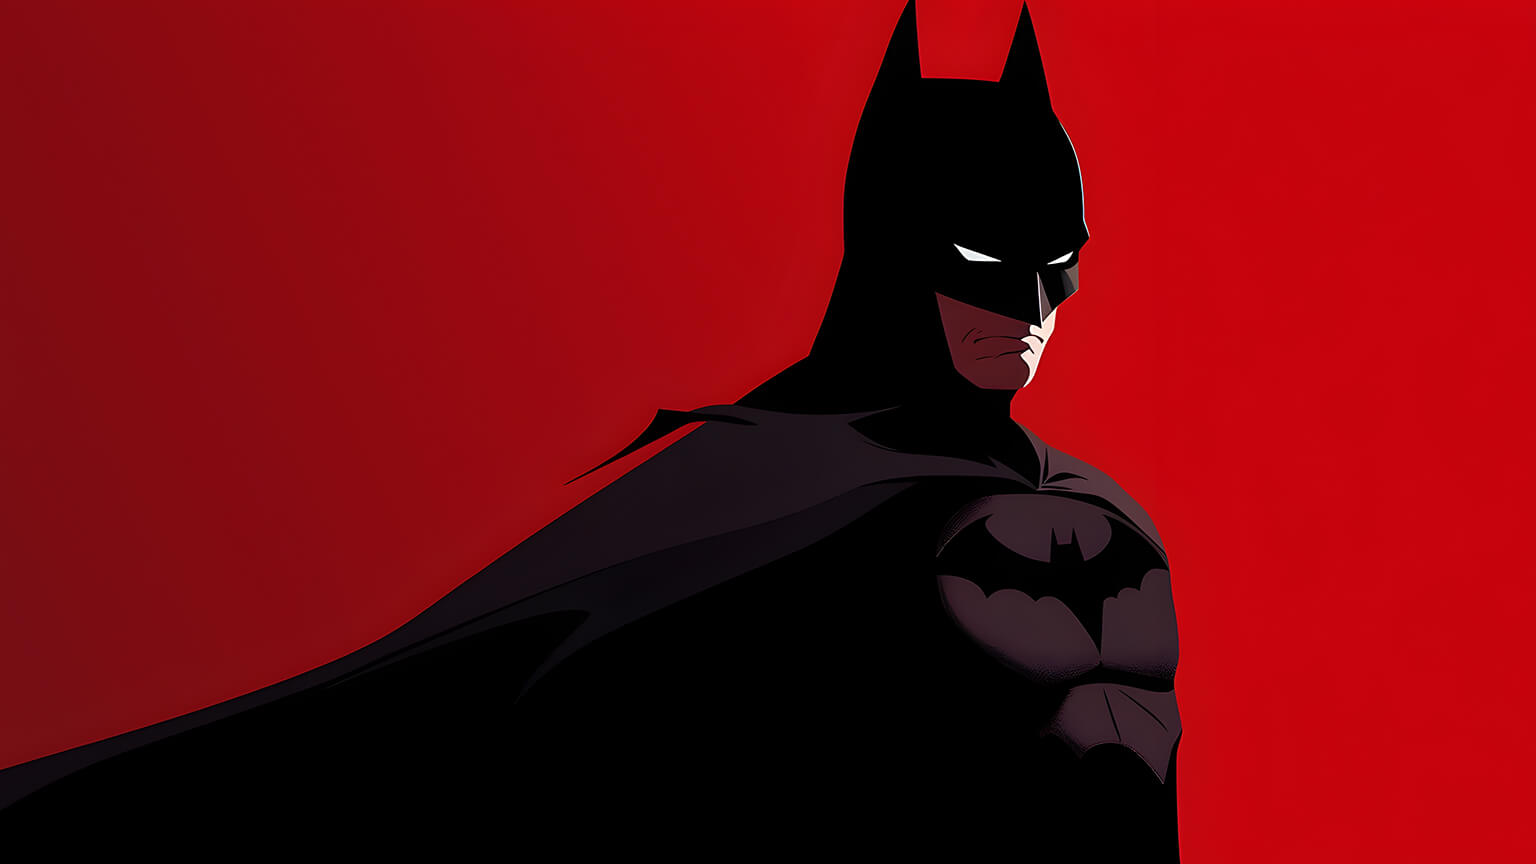 DC Comics Batman Black & Red Wallpapers - Batman Wallpaper 4k